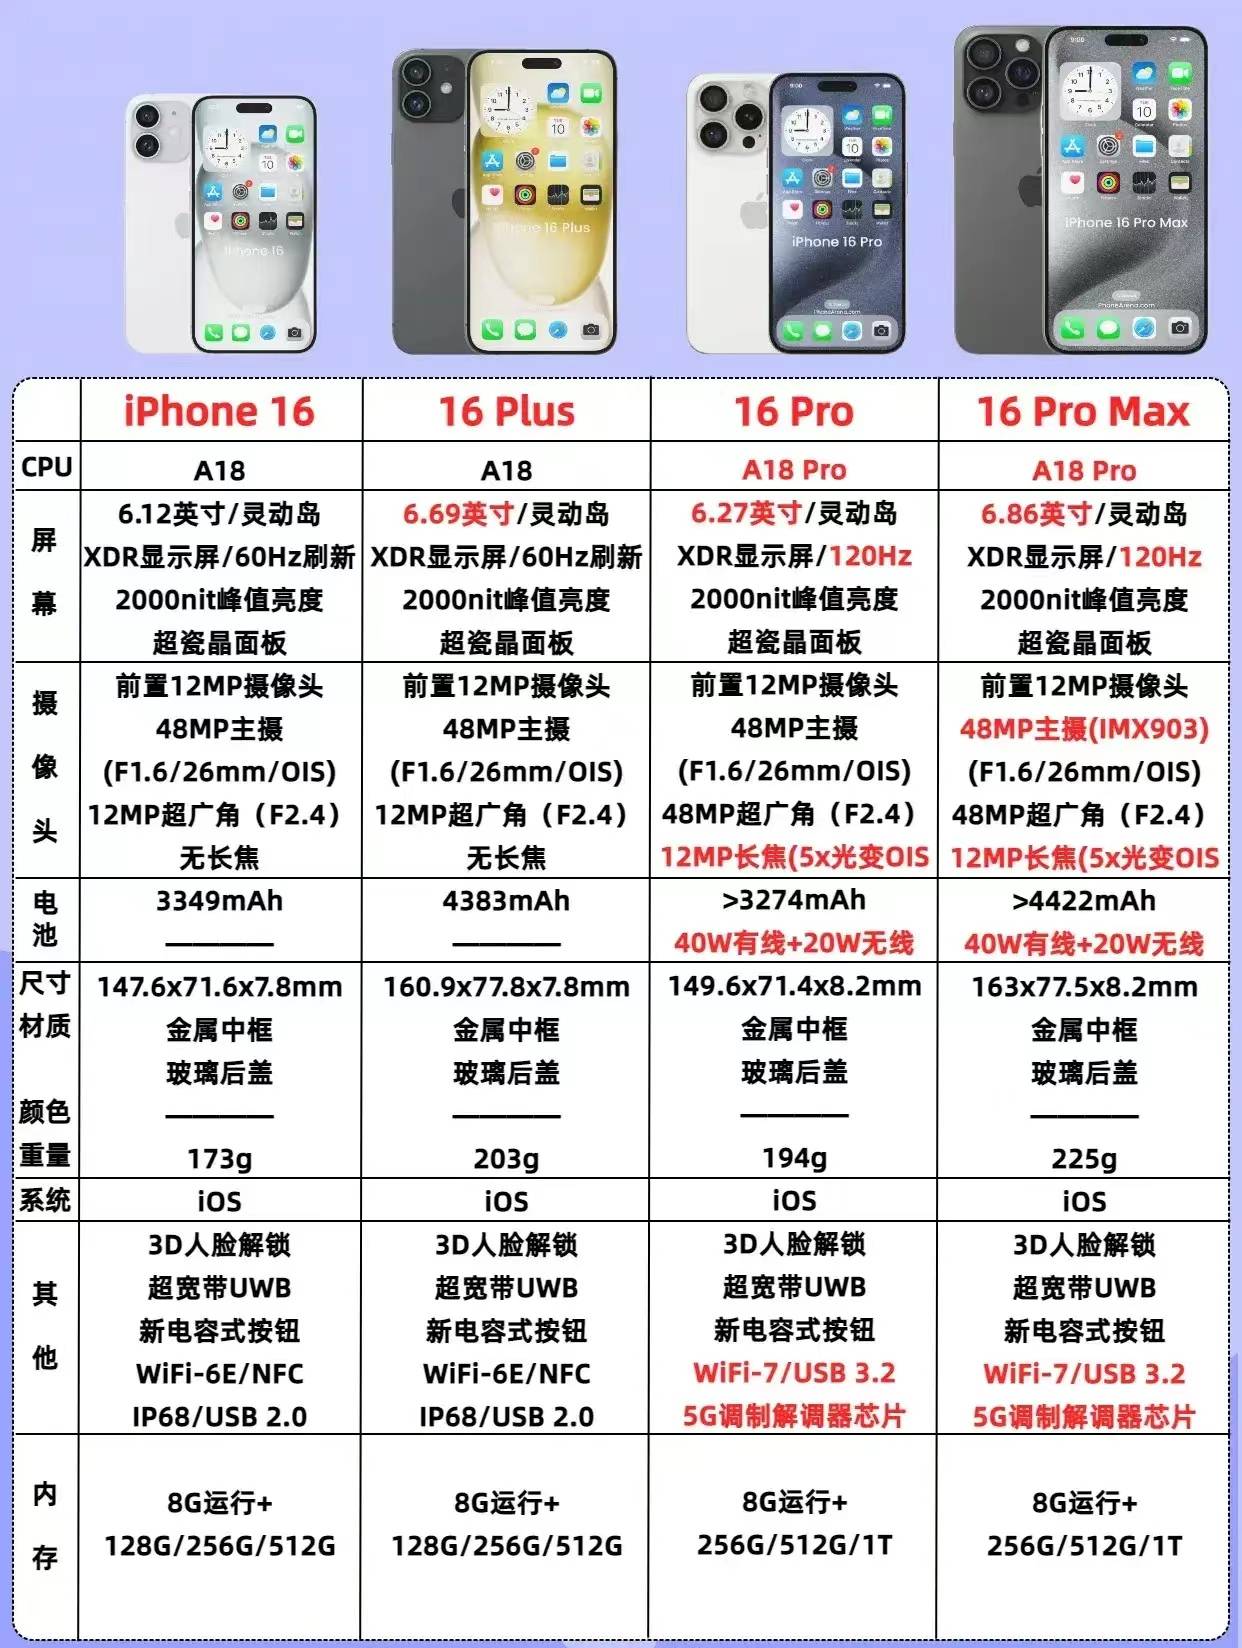 如何非要买苹果手机,为什么建议一定要等等iphone 16系列?